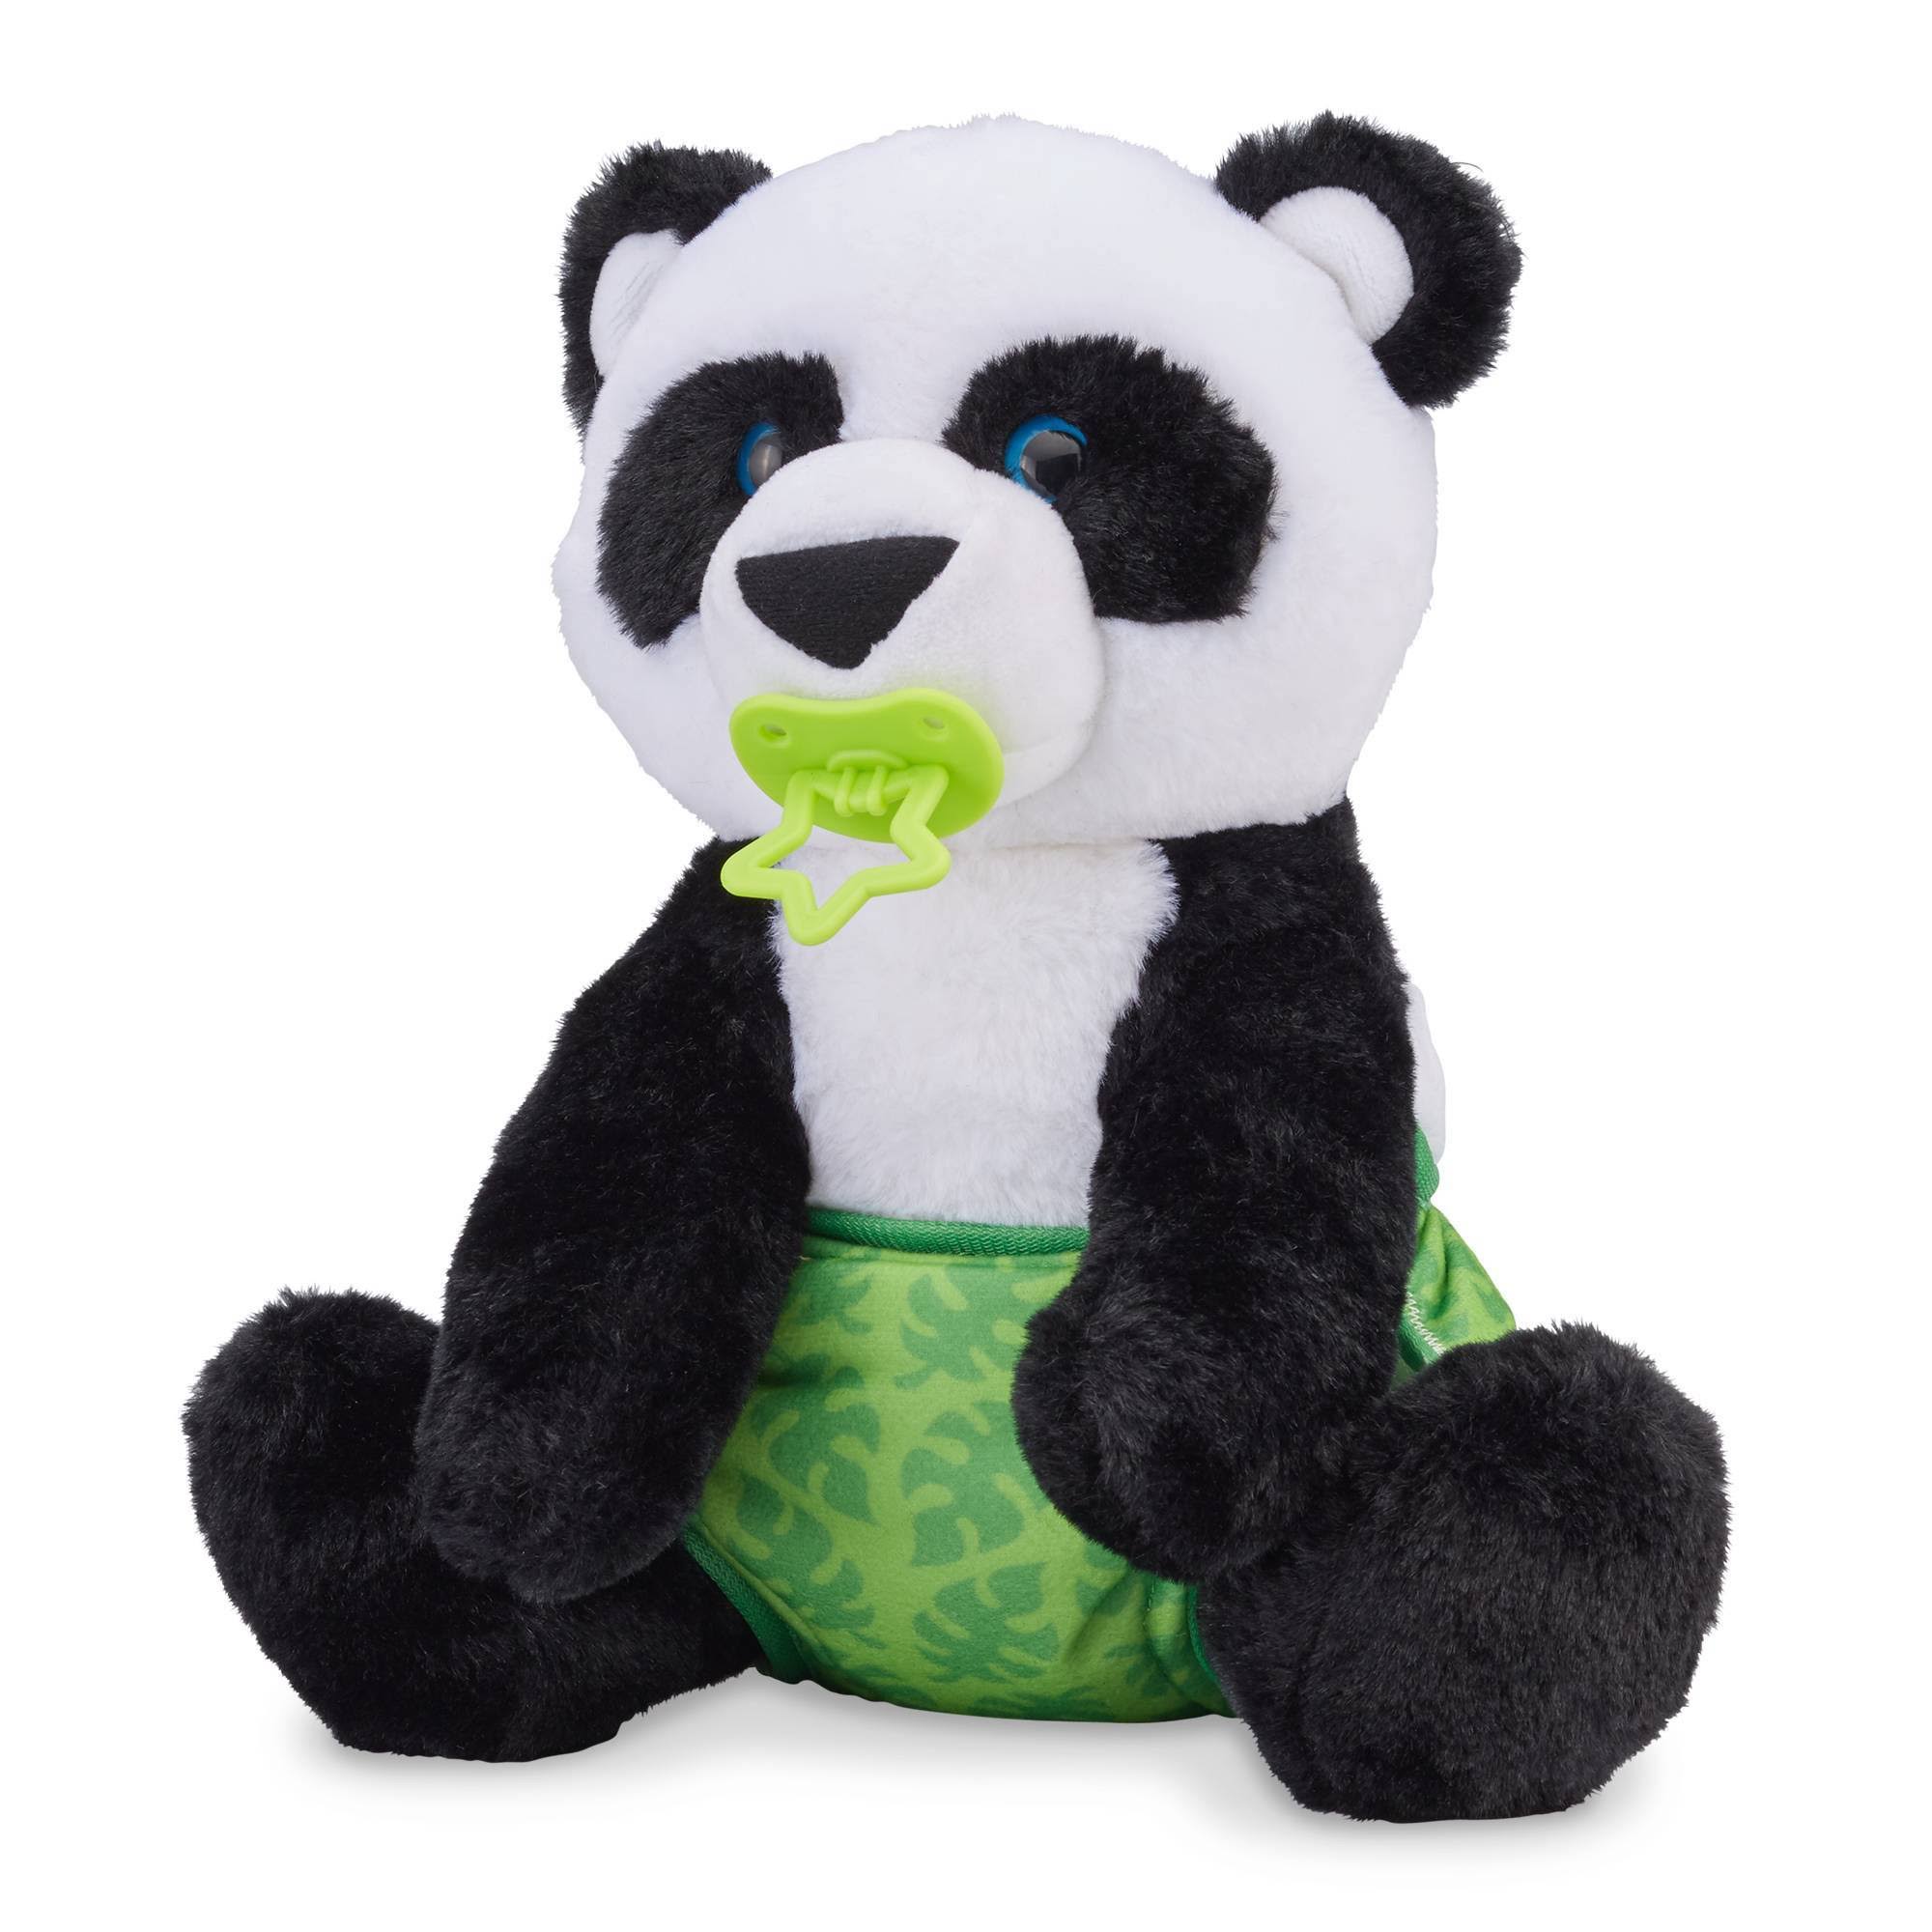 Baby Panda Stuffed Animal by Melissa & Doug